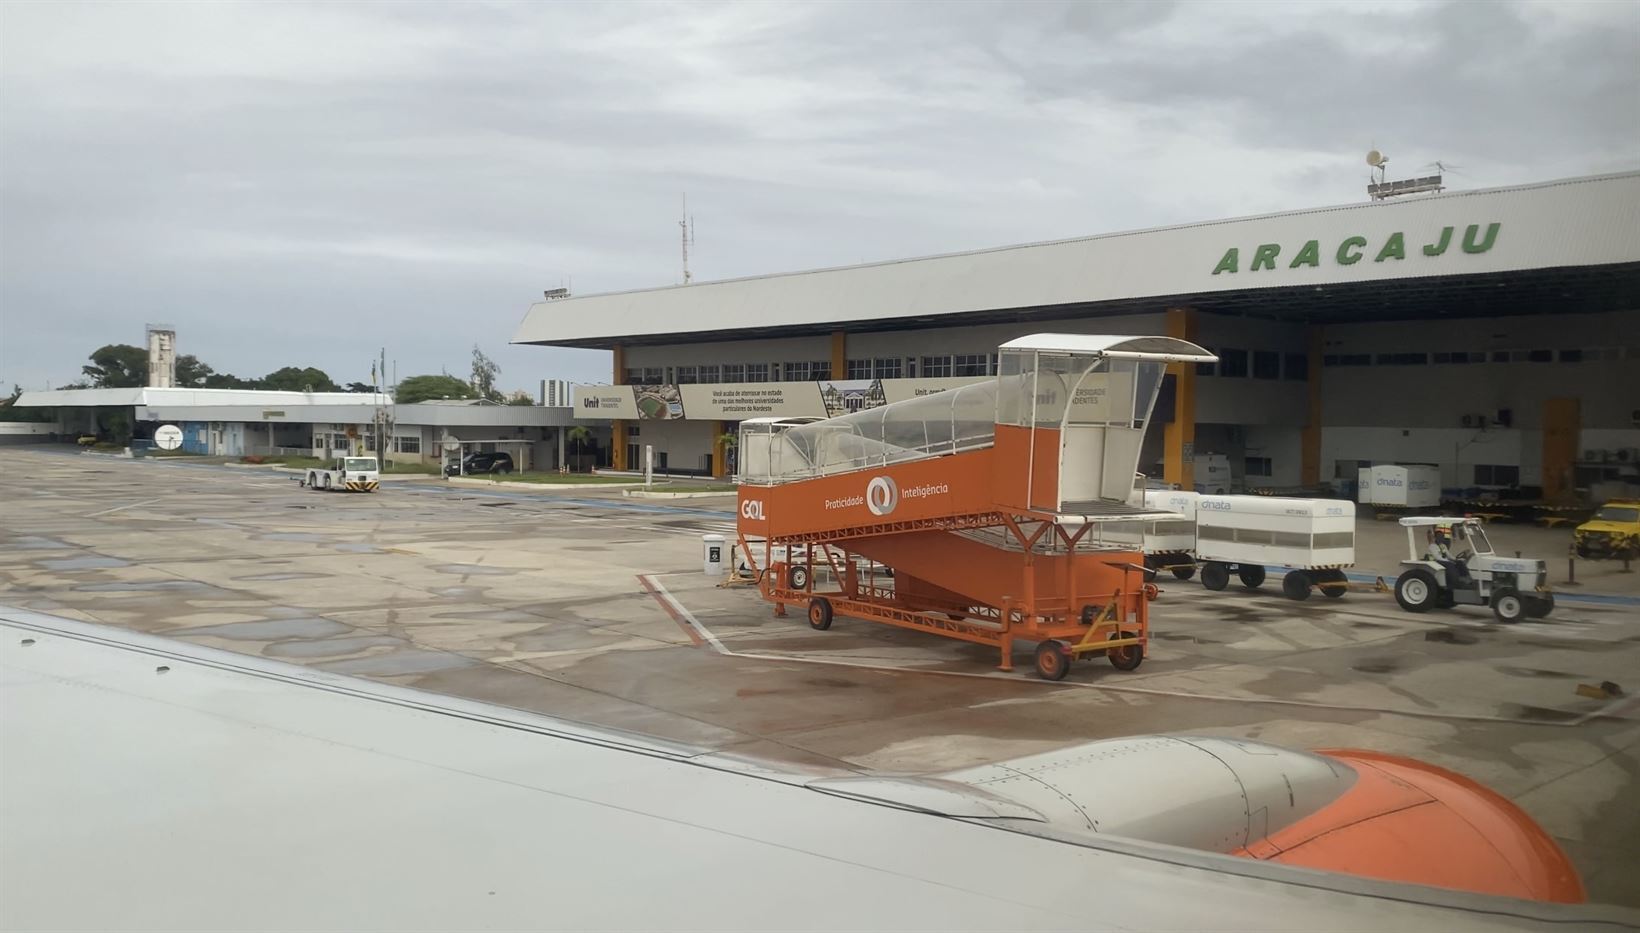 Aeroporto de Aracaju (AJU)